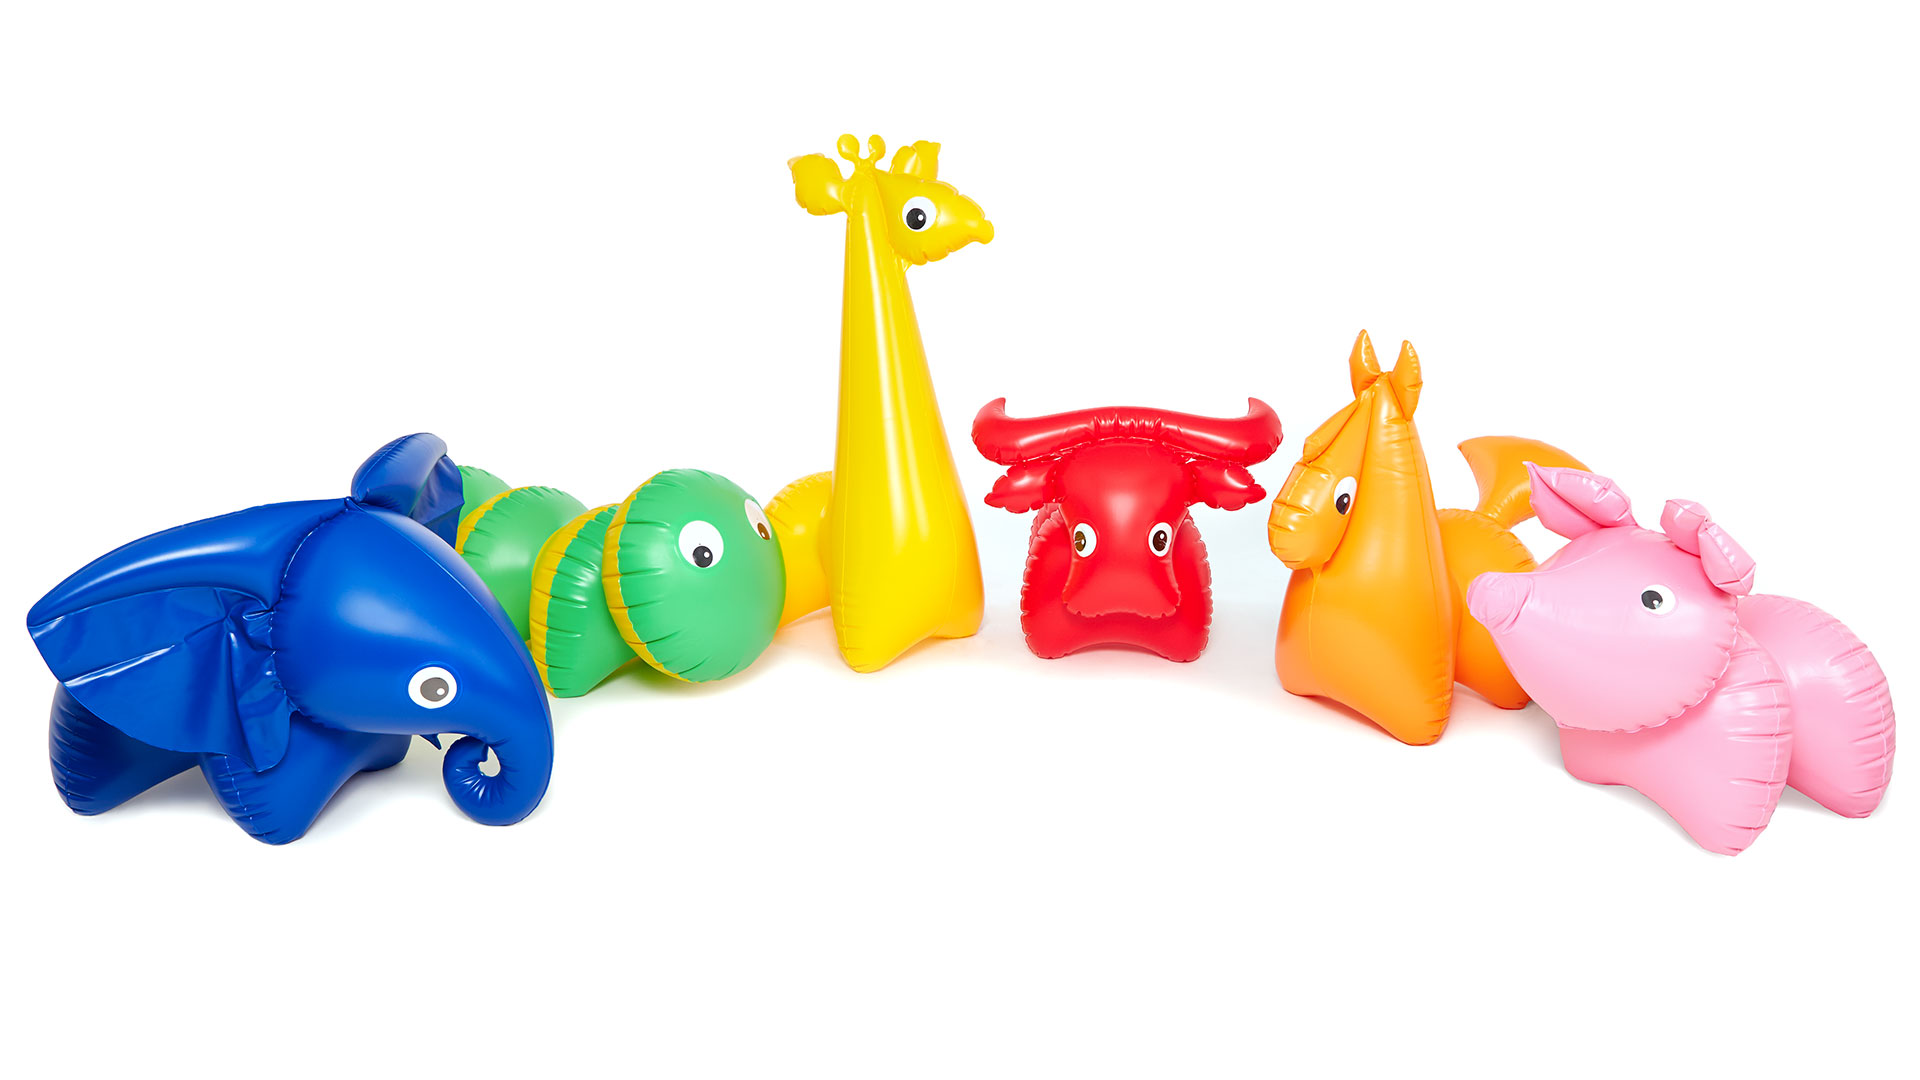 Nafukovací hračky Slon, Housenka, Žirafa, Buvol, Koník a Prasátko © Fatra